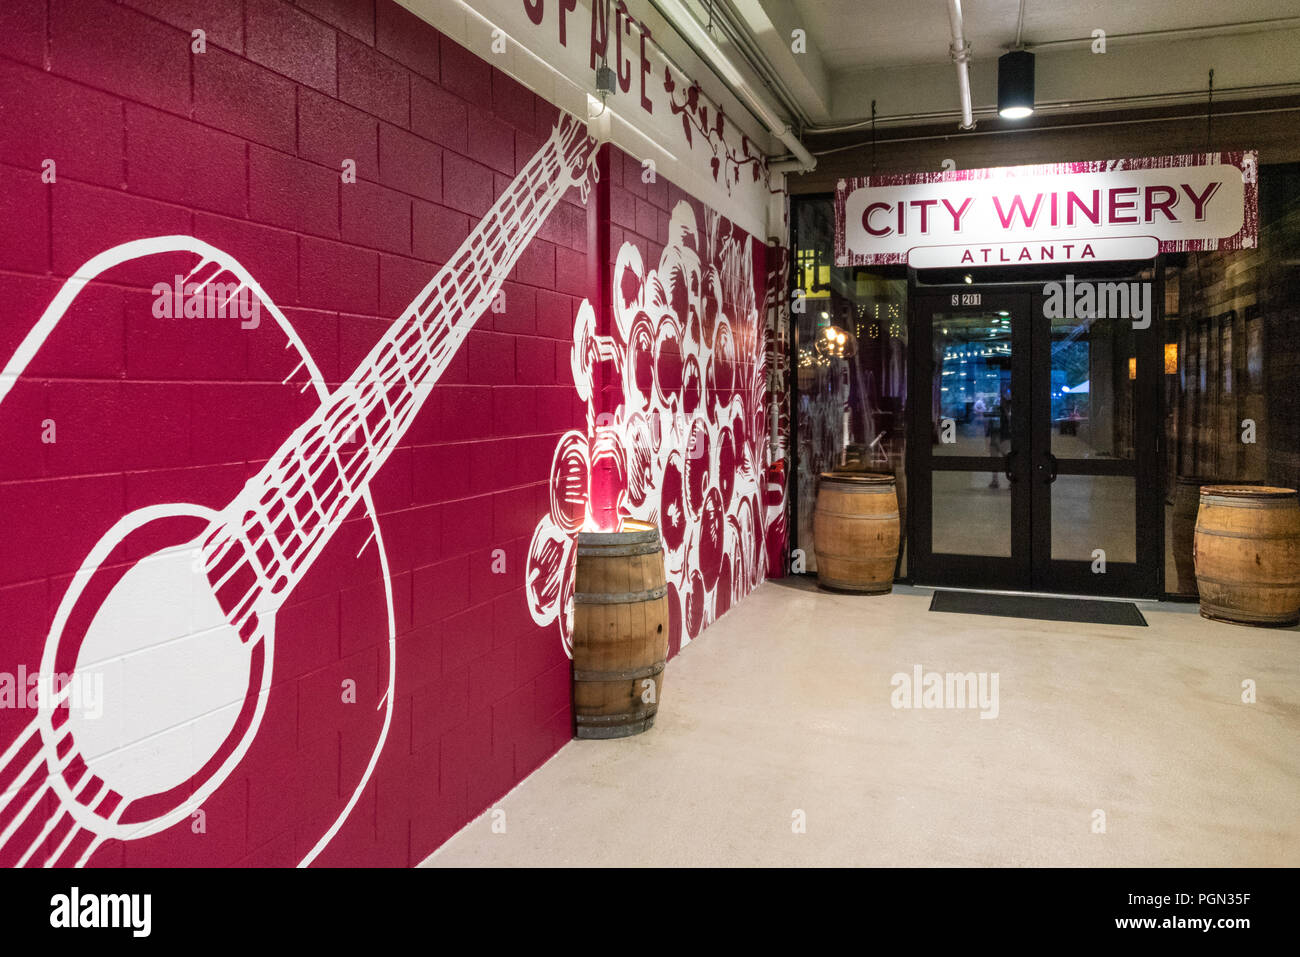 Stadt Weingut Atlanta, am Ponce City Market gelegen, ist ein Premier intime Musik Schauplatz mit einer voll funktionsfähigen Weingut und Restaurant kombiniert. Stockfoto